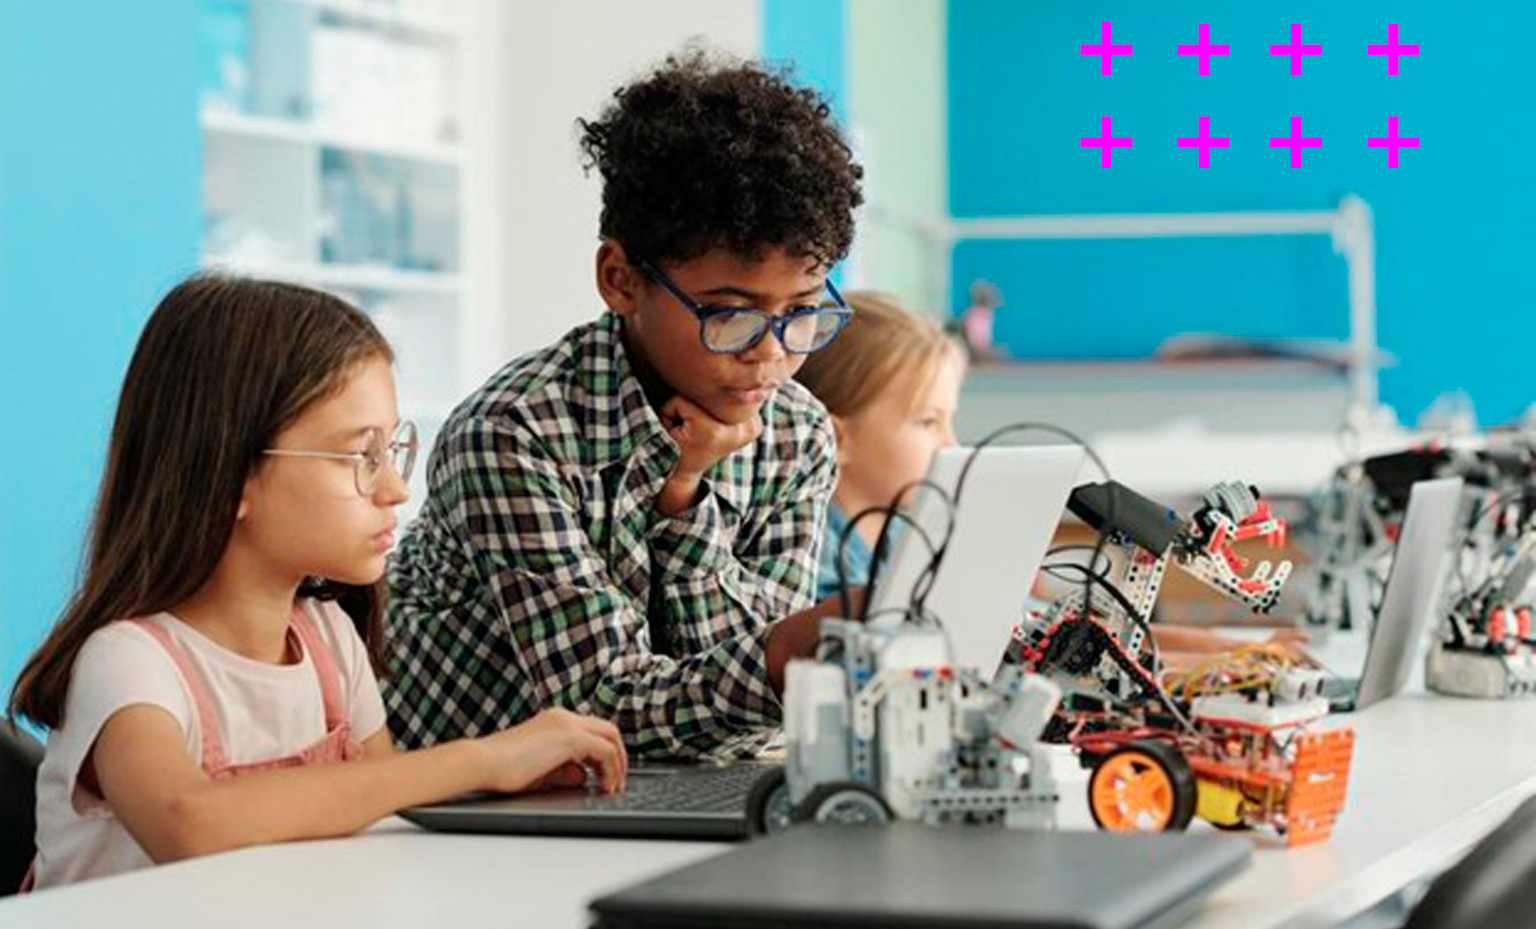 grupo de três crianças diversas composto por duas meninas e um menino aprendem sobre robótica na sala de aula.